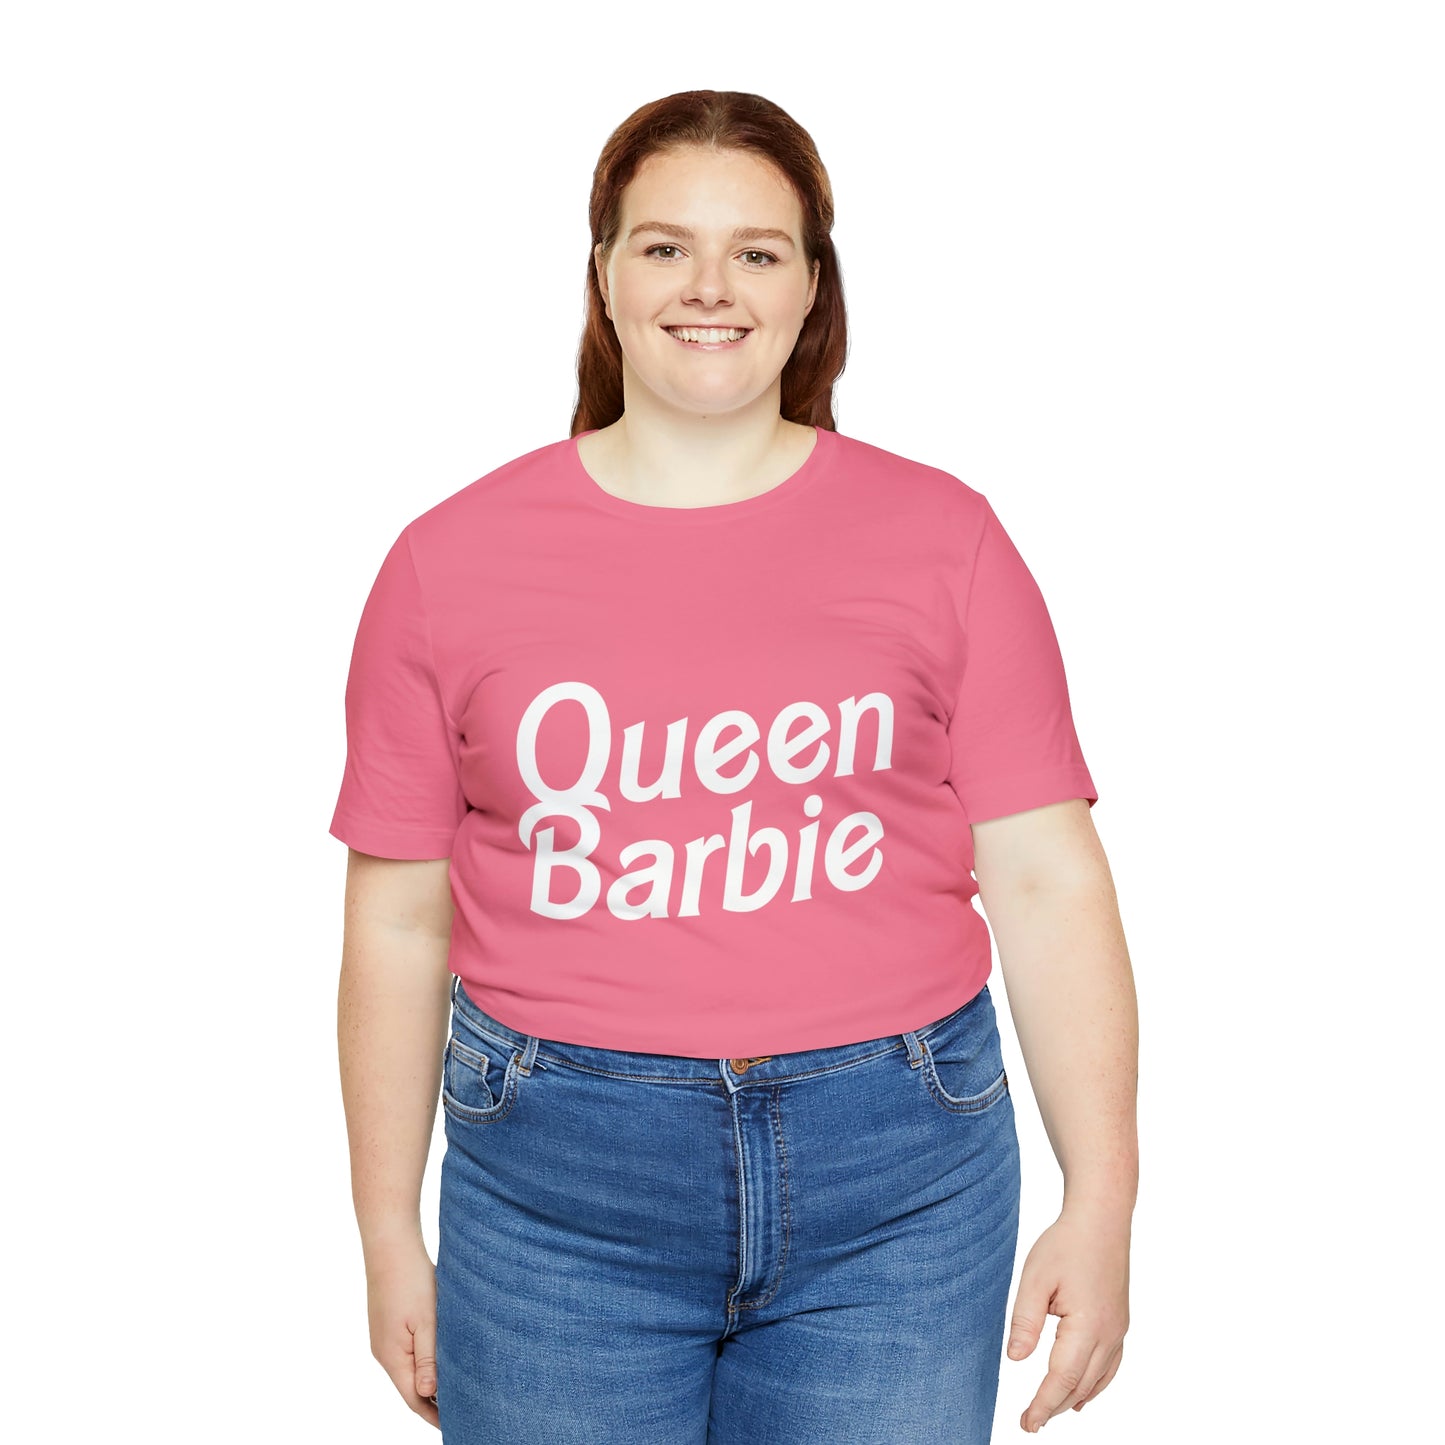 Queen Barbie